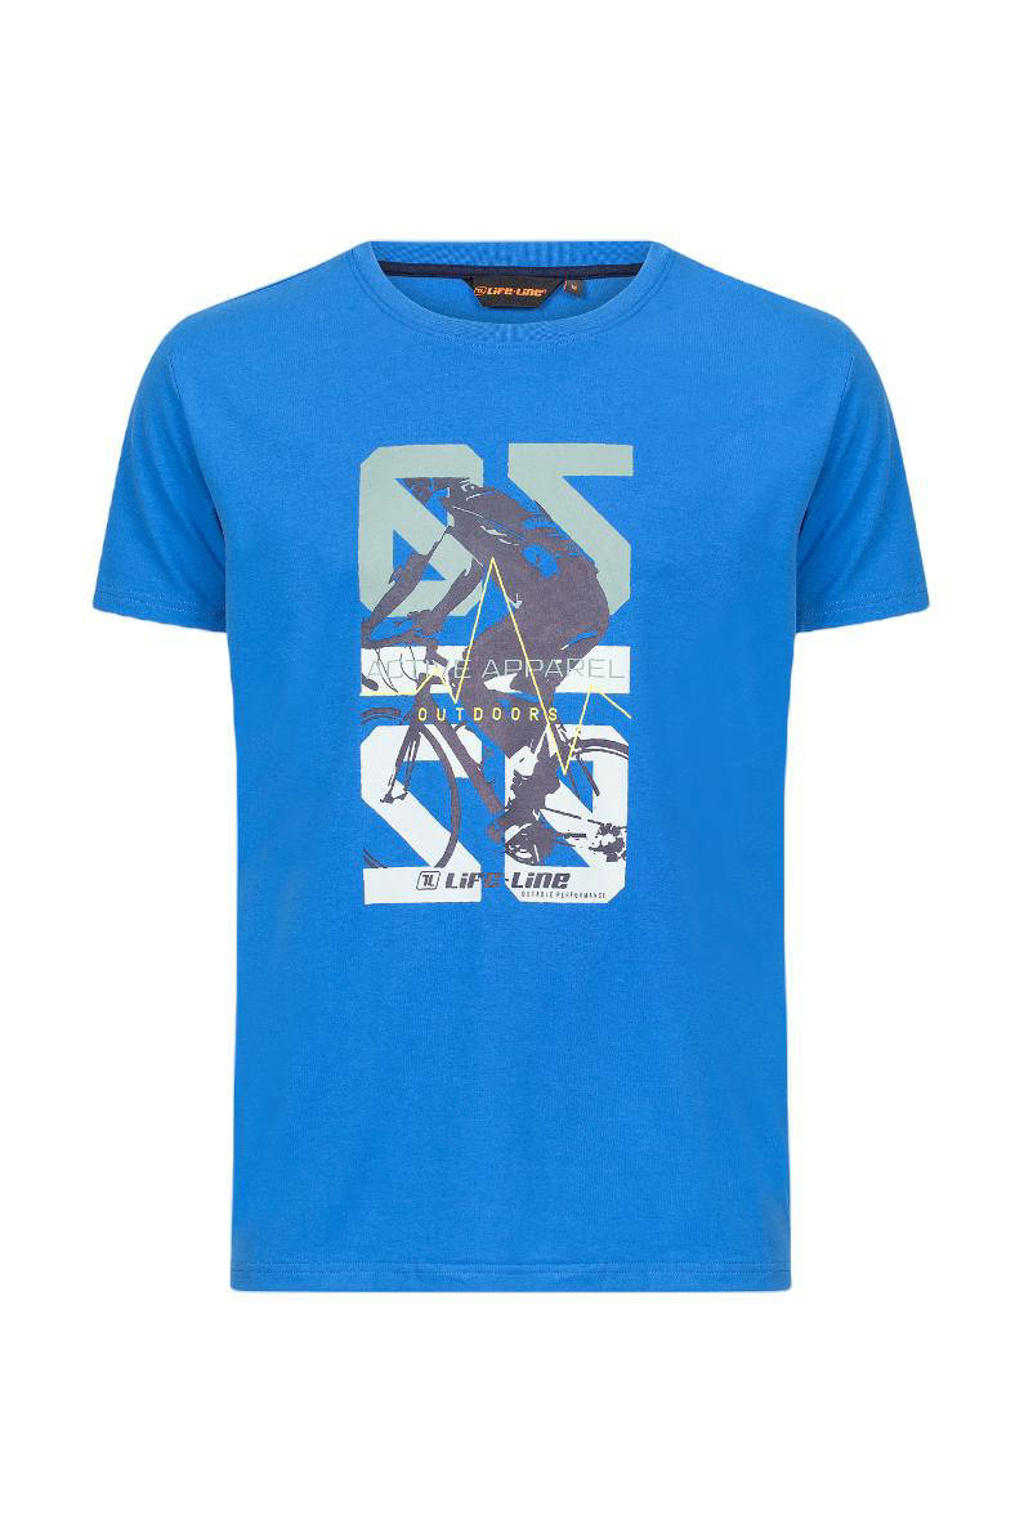 Blauwe heren Life-Line outdoor T-shirt van polyester met printopdruk, korte mouwen en ronde hals